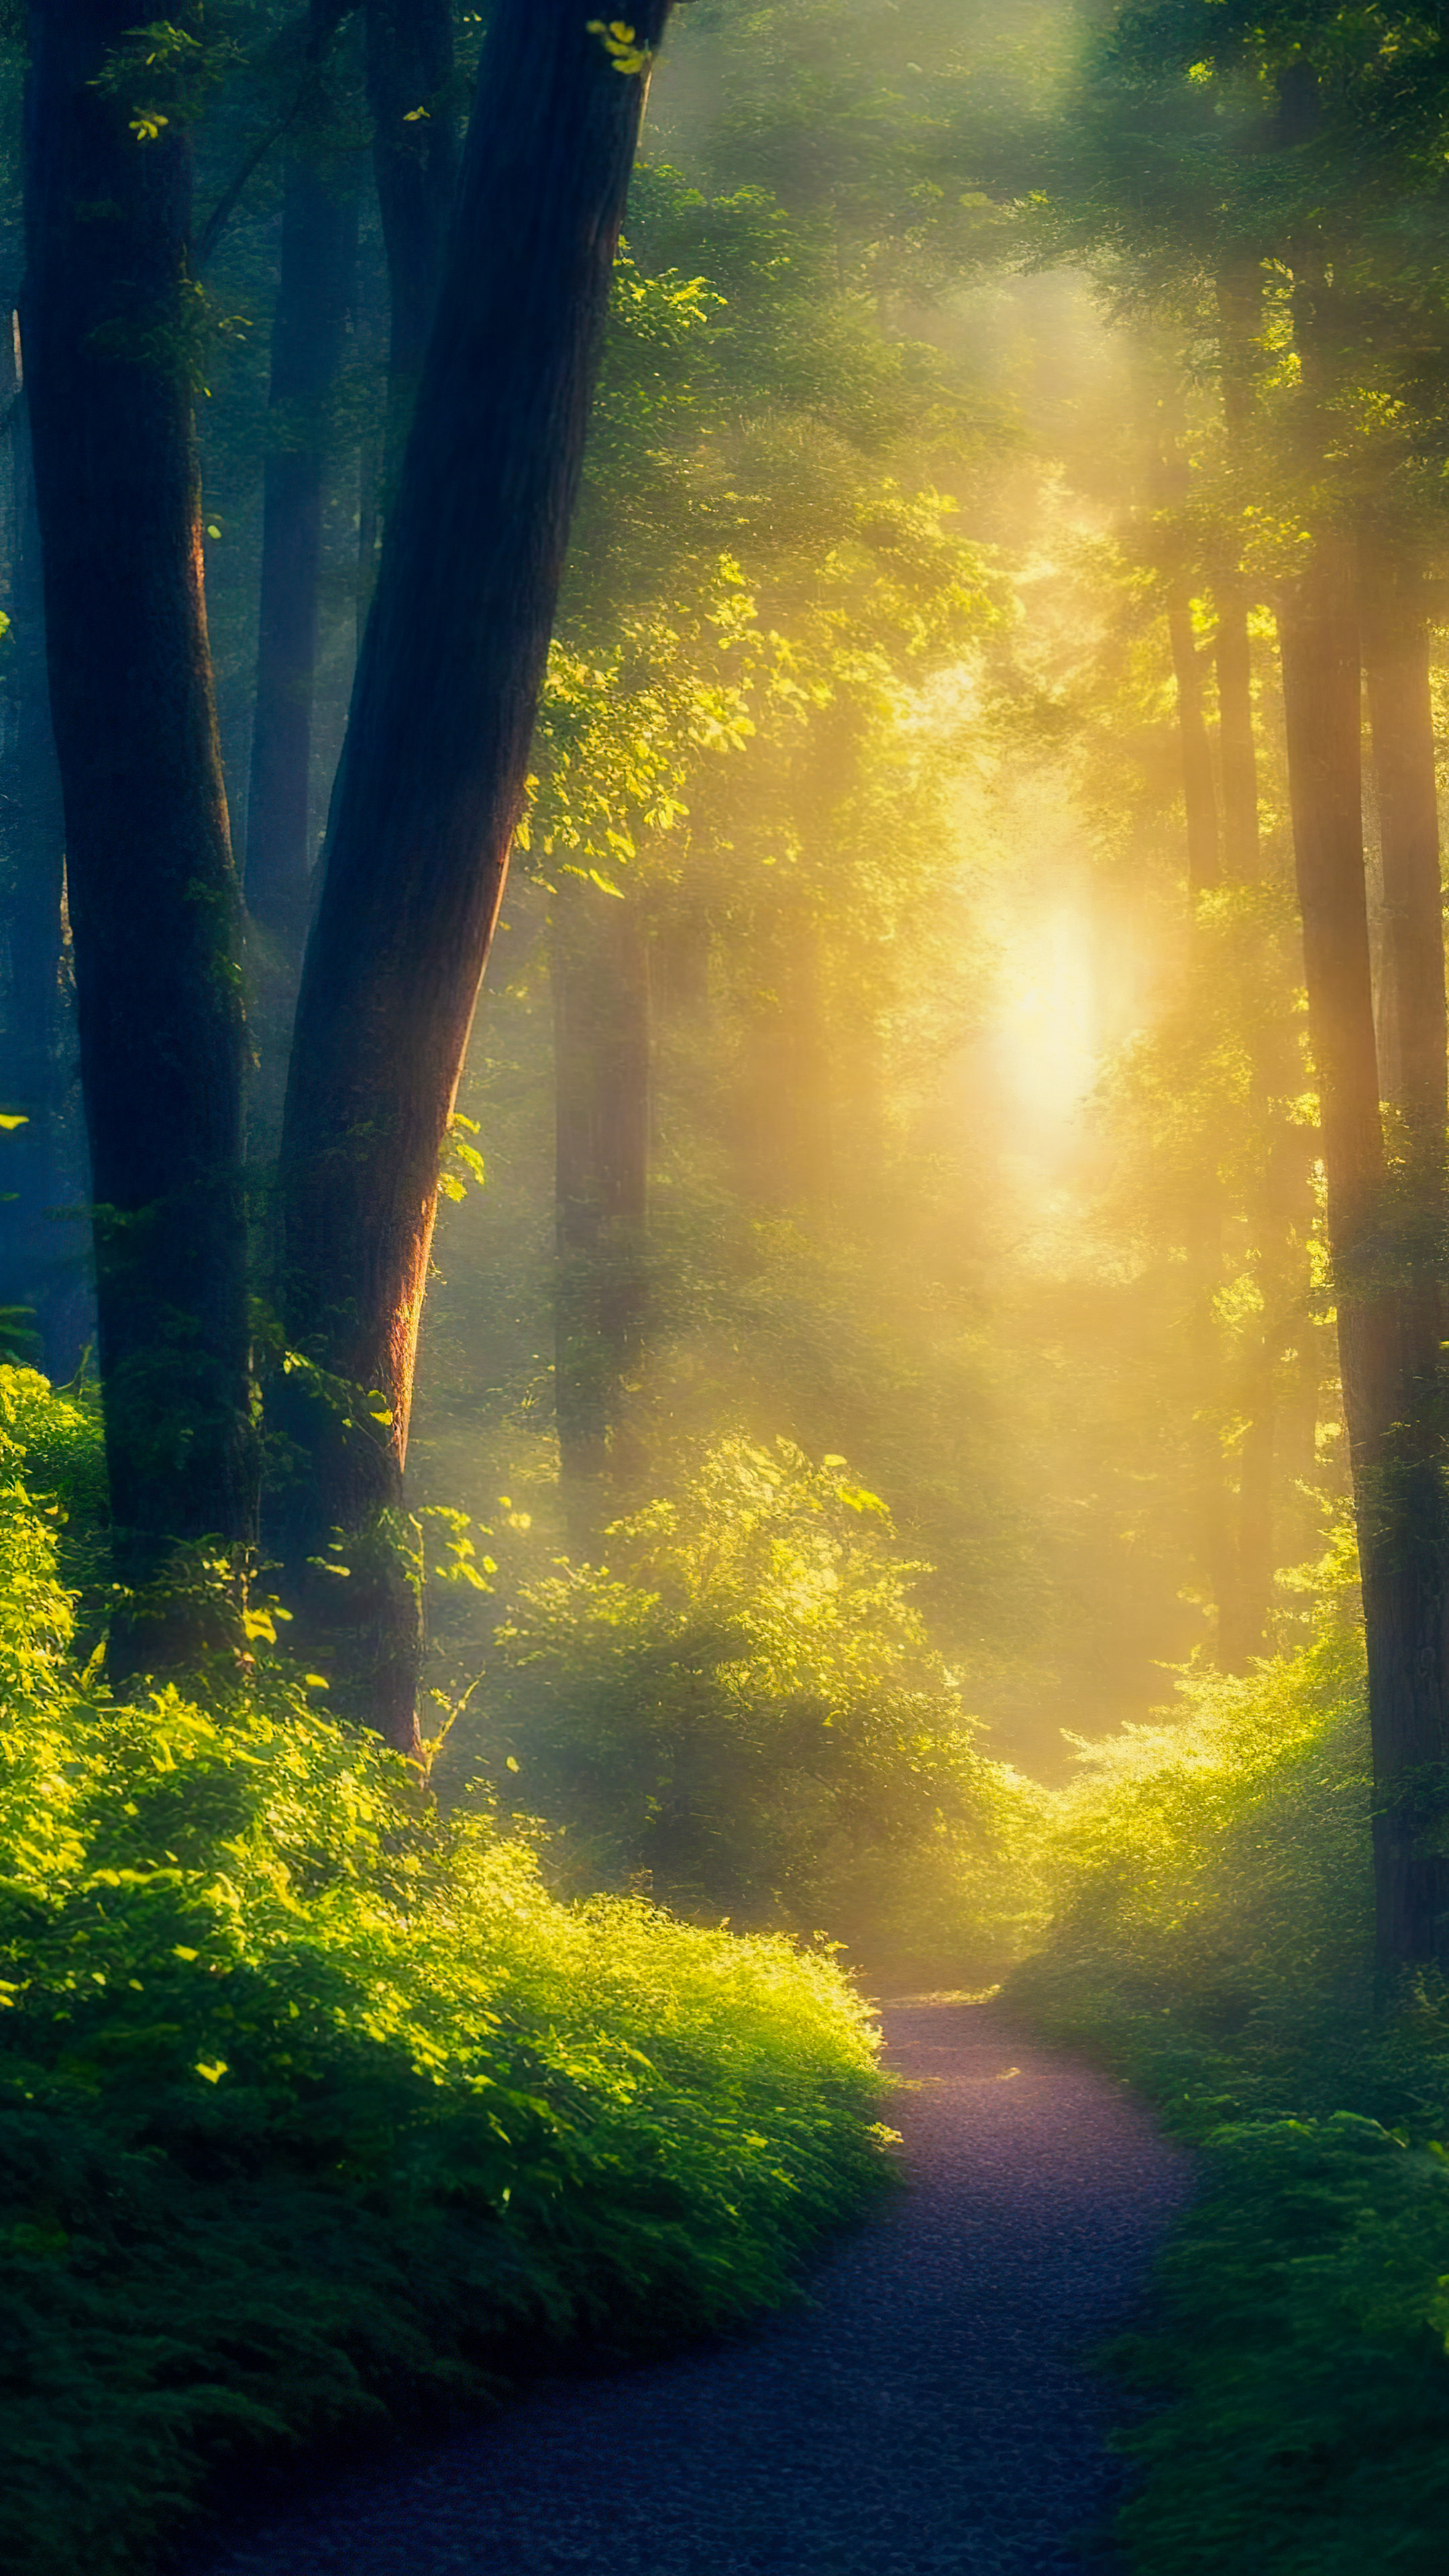 Illuminez votre iPhone avec notre fond d'écran nature en 4K, capturant une forêt magique baignée de la douce lueur des lucioles lors d'une soirée d'été chaude.